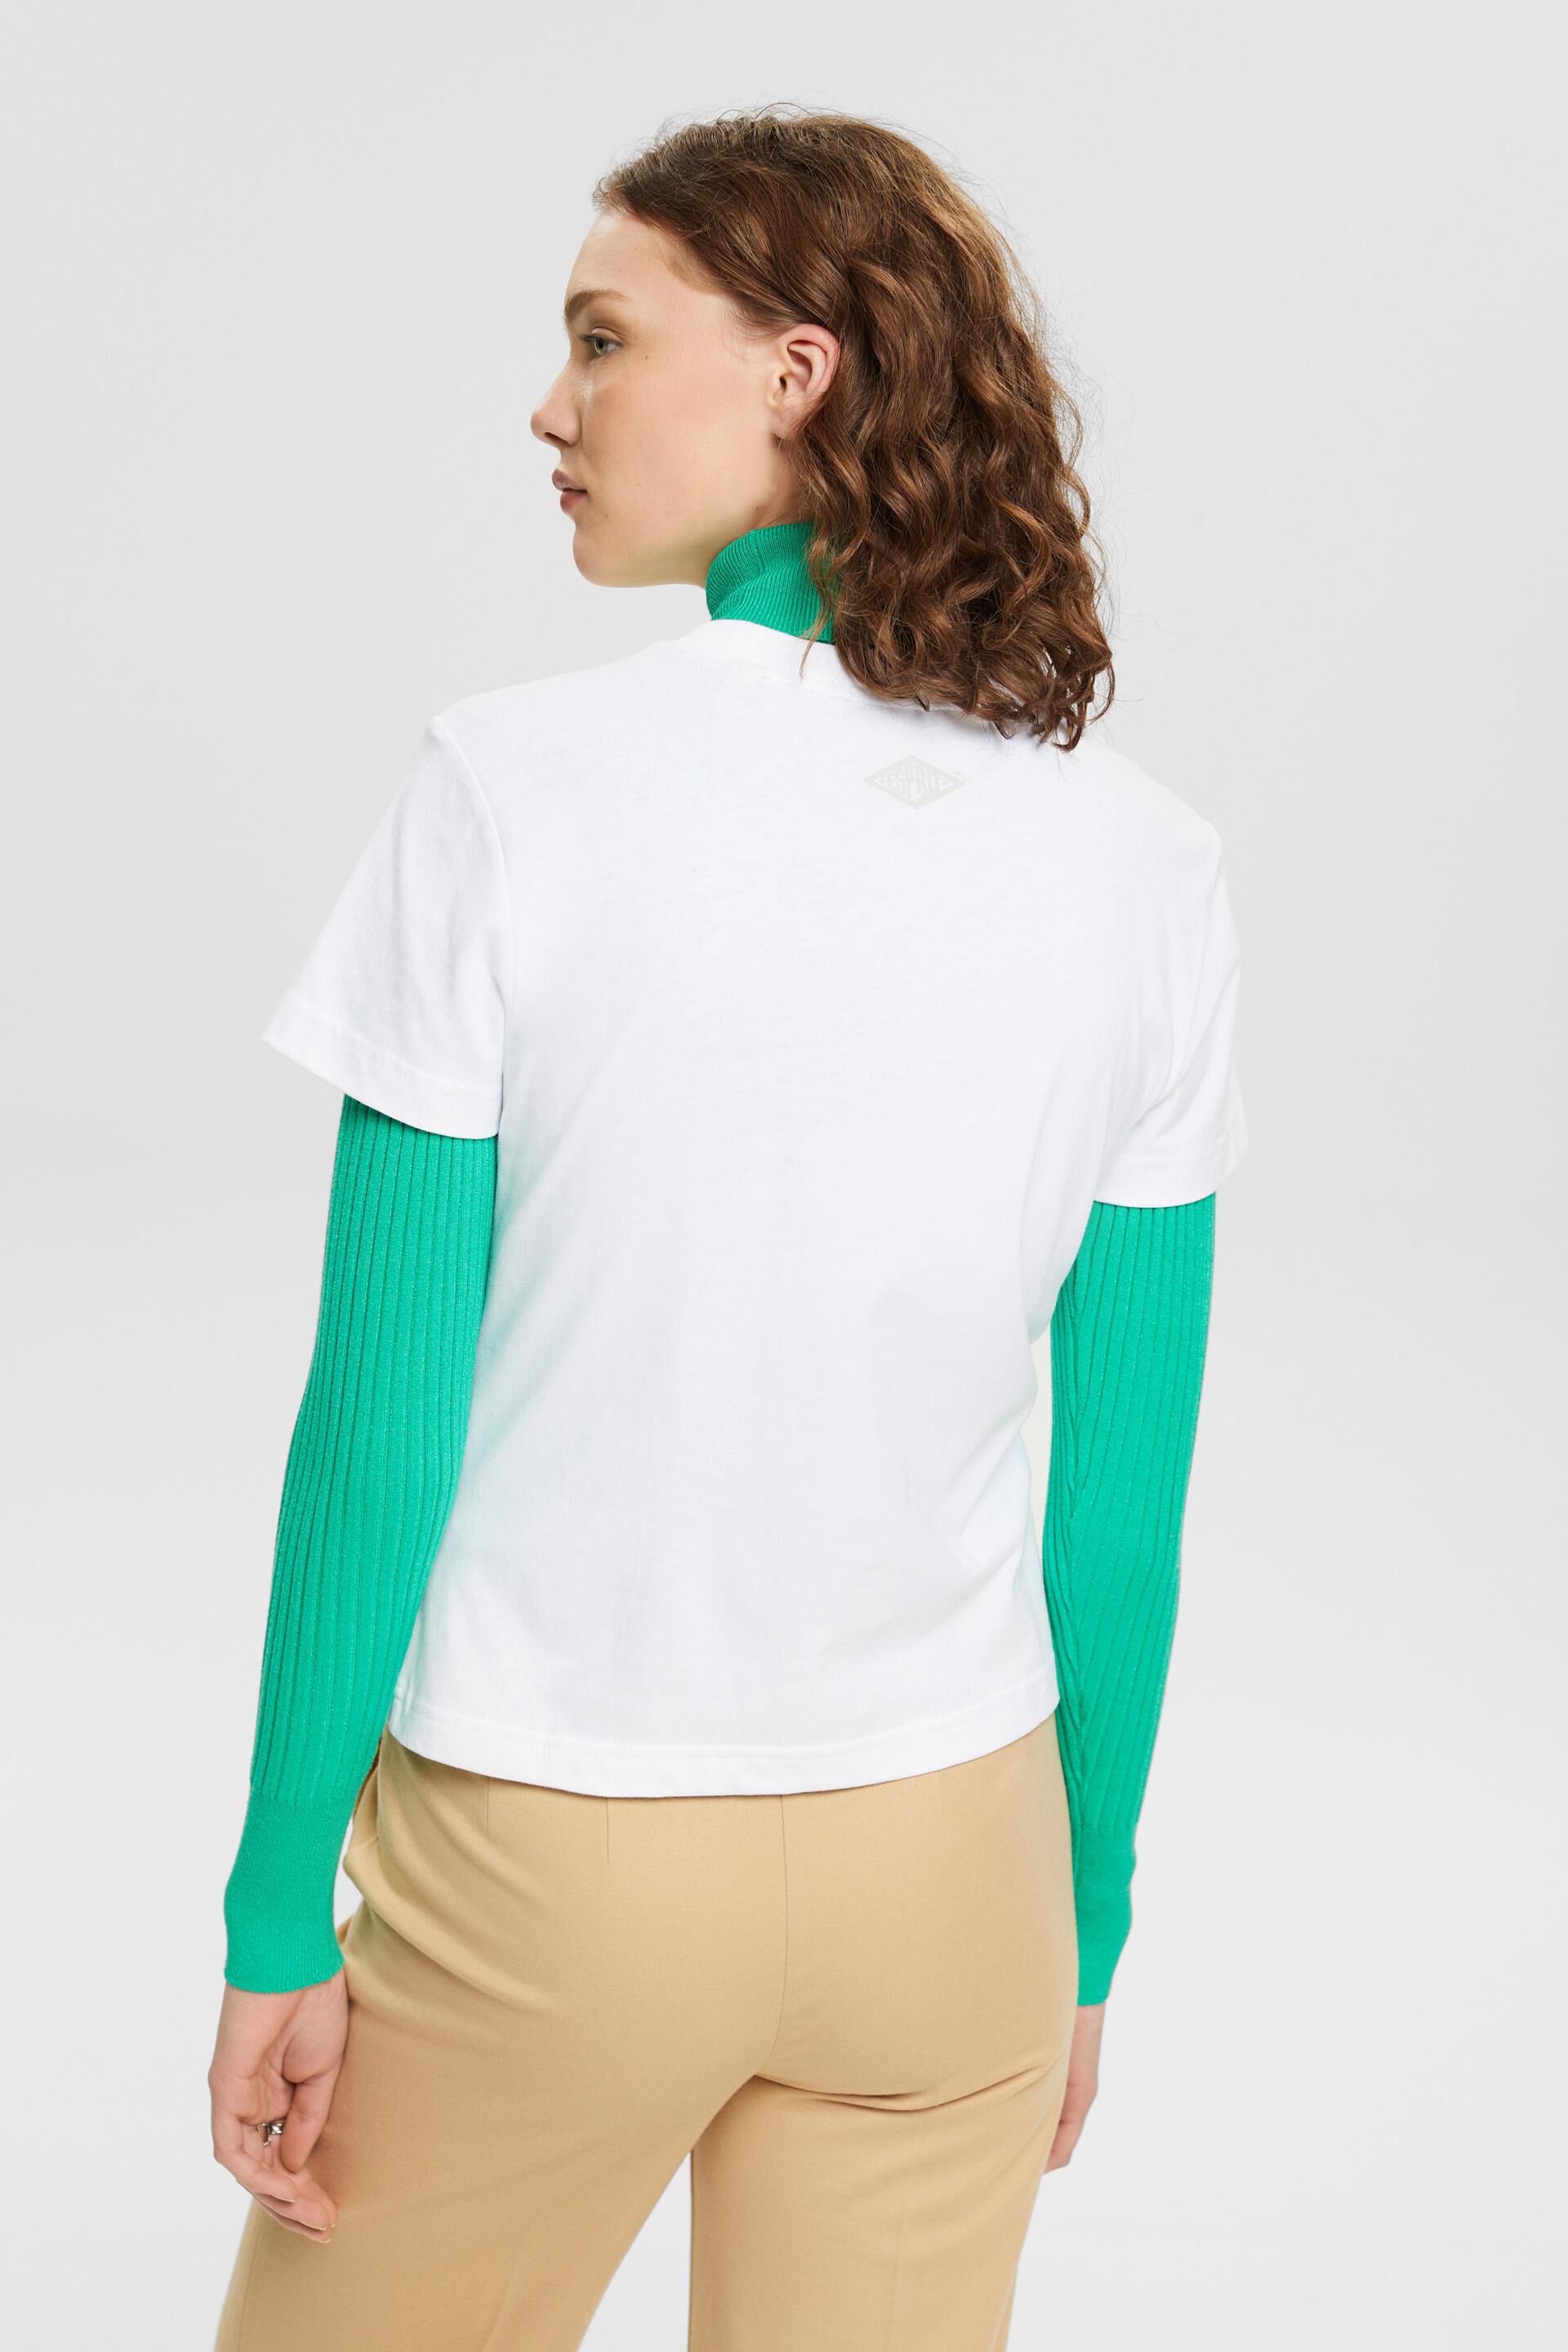 Esprit mit aufgedrucktem Logo Baumwoll-T-Shirt